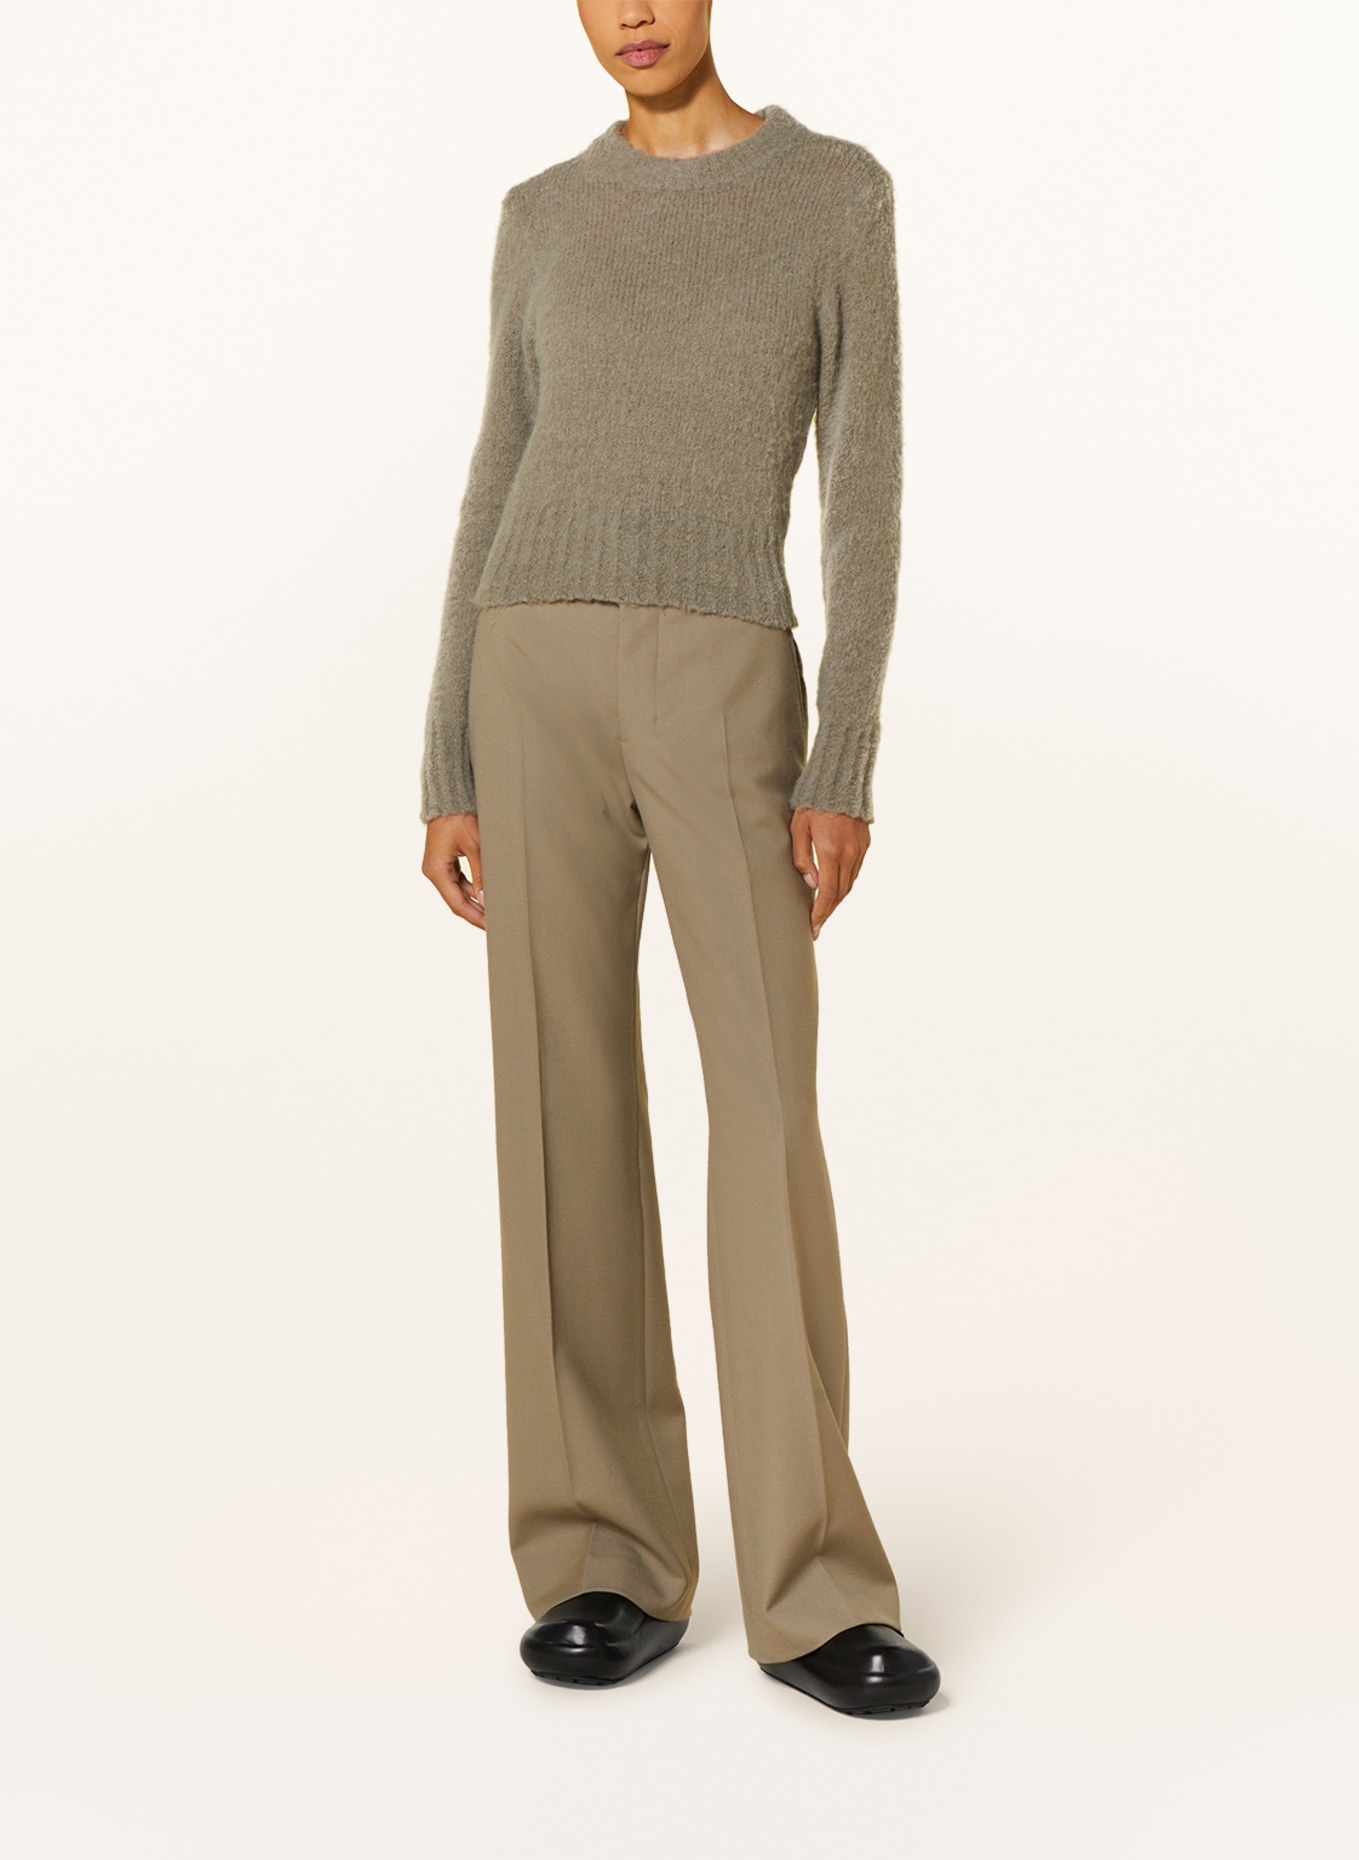 AMI PARIS Sweater with alpaca, Color: GRAY (Image 2)